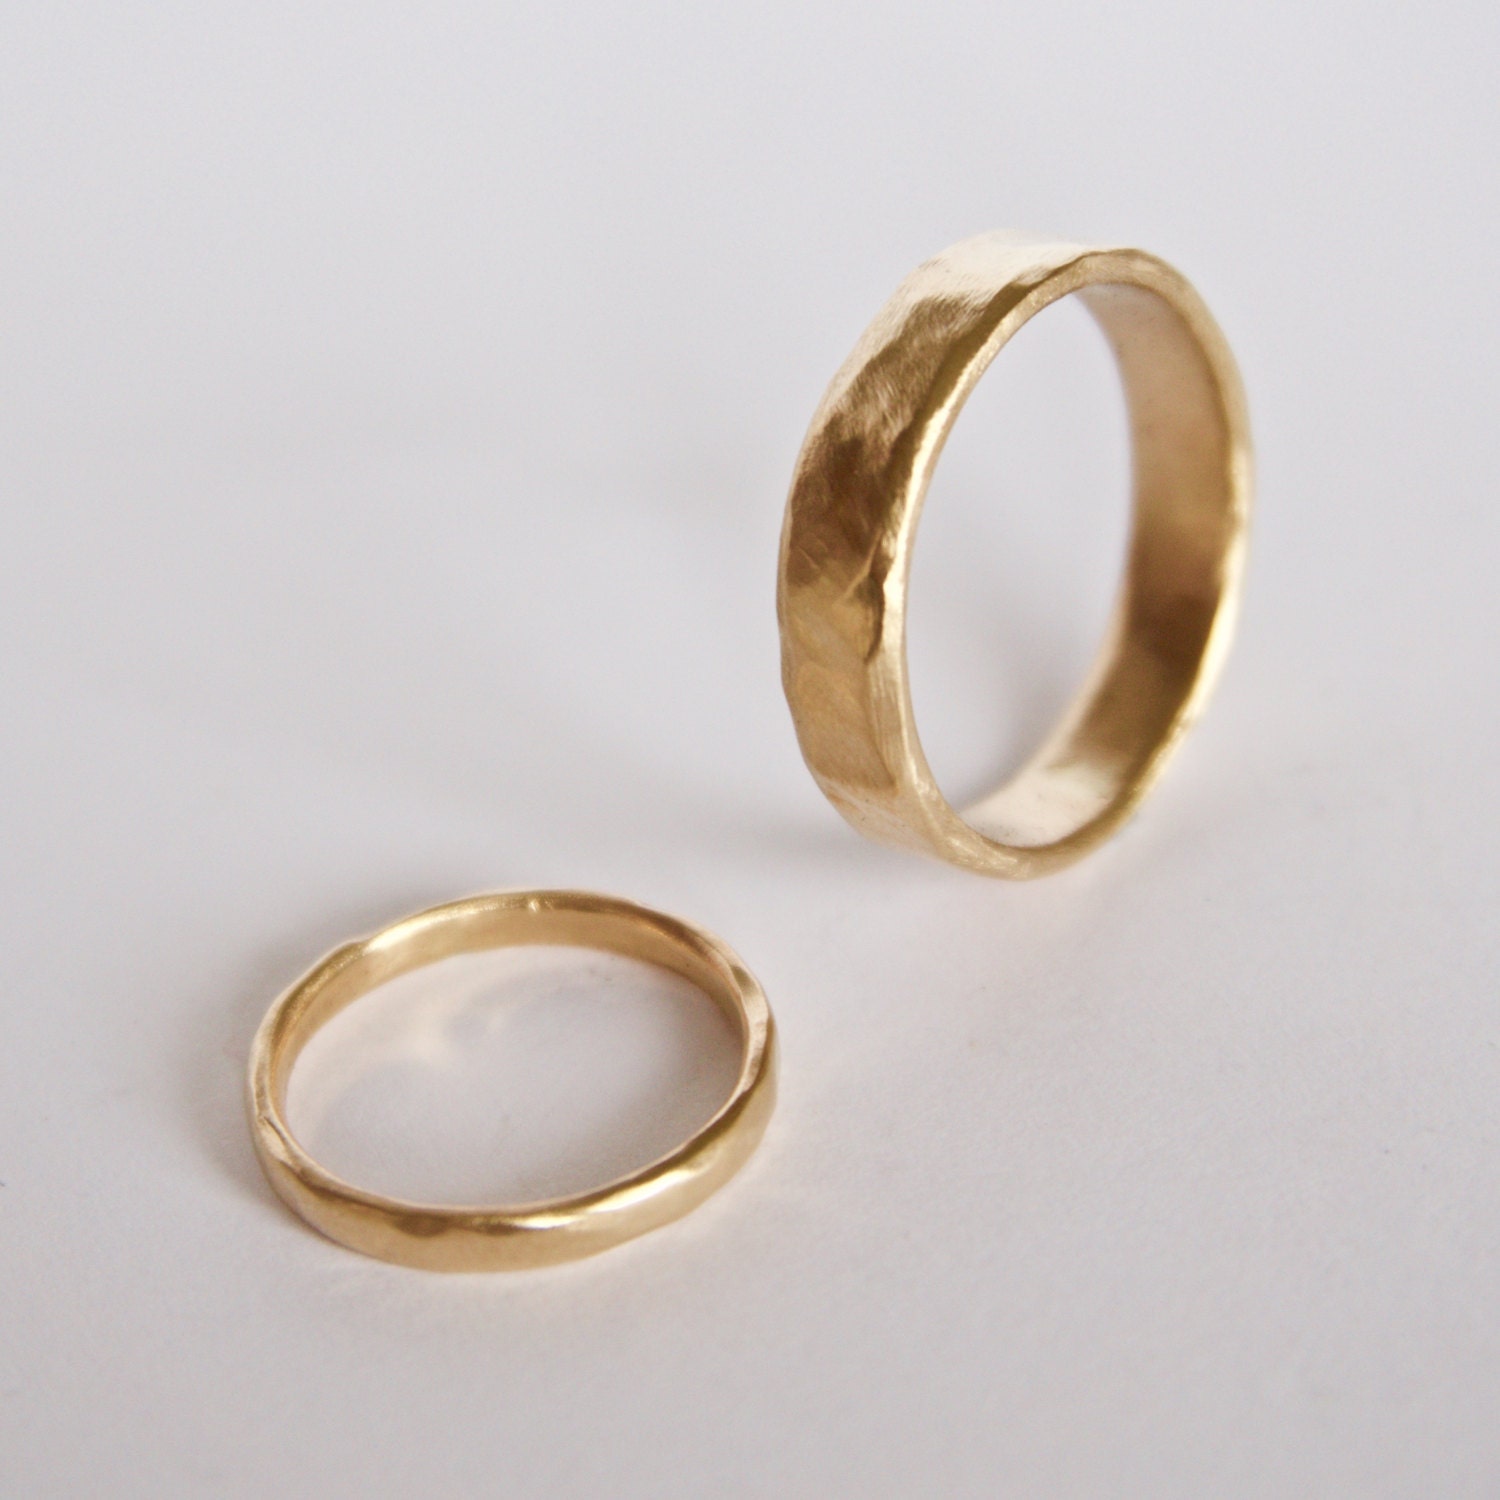 Gold Wedding Ring Set Two Organic Shape Textured Bands 18 | Etsy UK